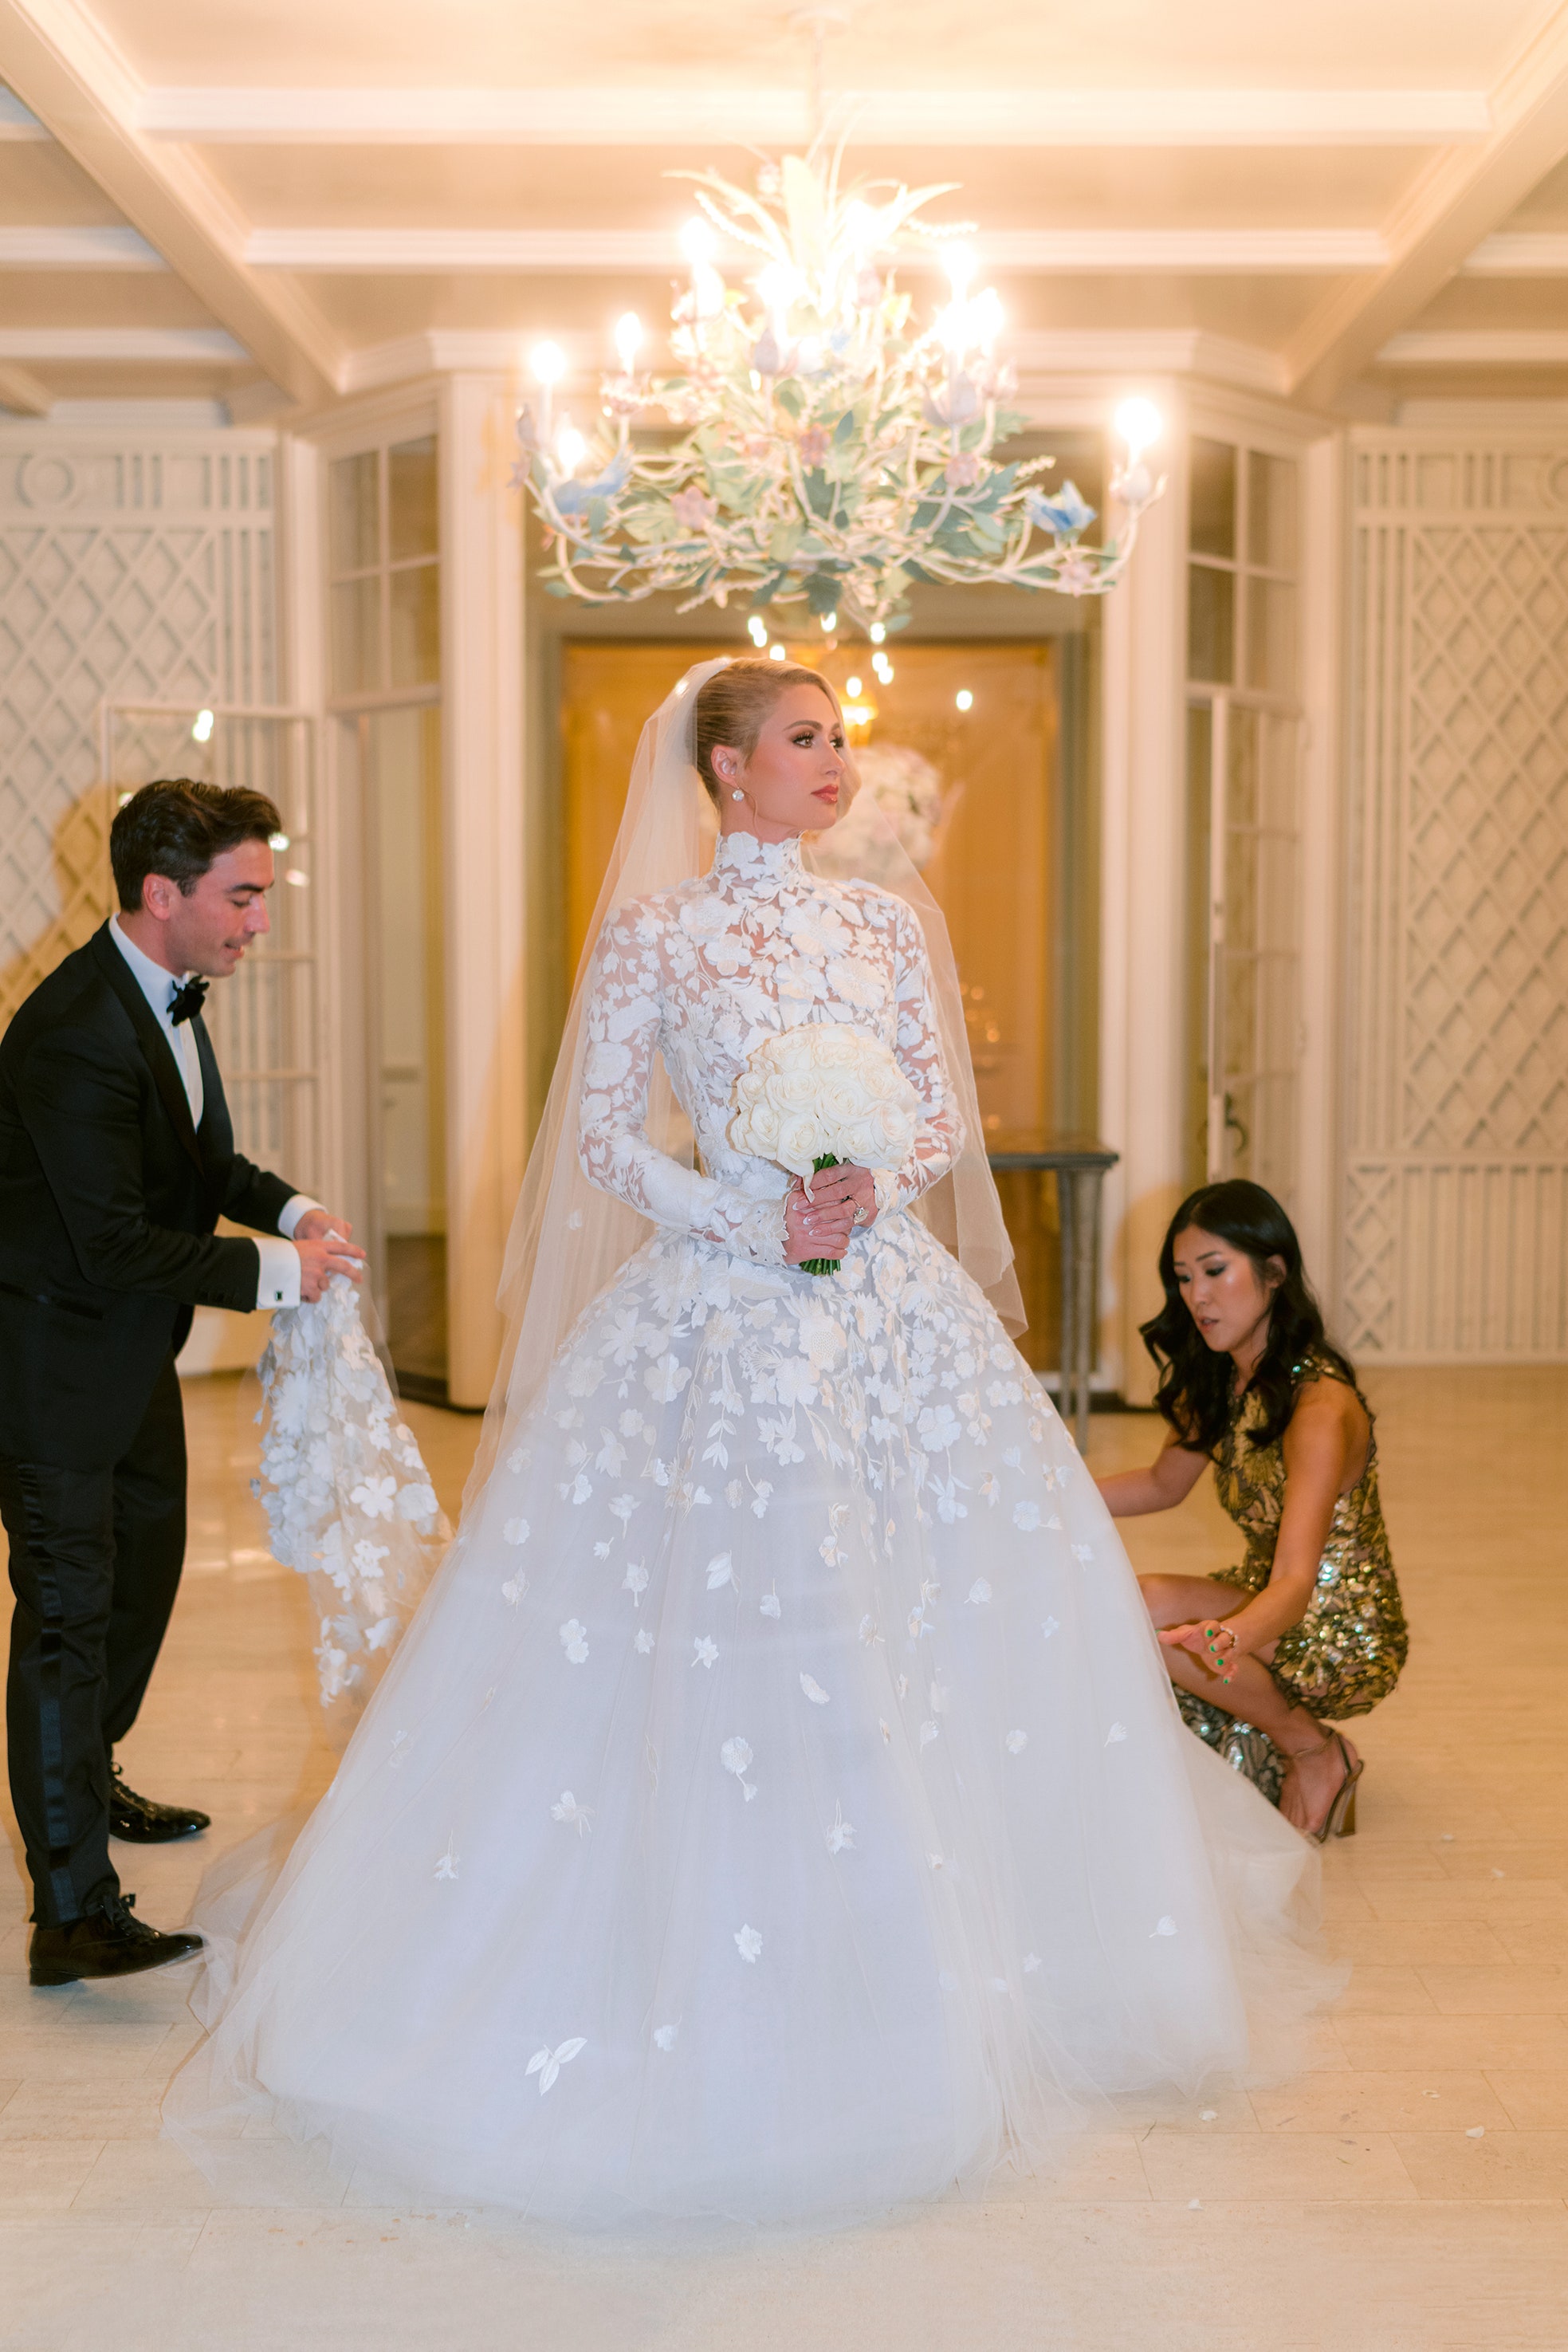 Cận cảnh 4 bộ váy cưới xa hoa trong hôn lễ Paris Hilton: Chỉ có duy nhất 1 bộ là kín đáo, còn lại đều theo style căng cực - Ảnh 6.